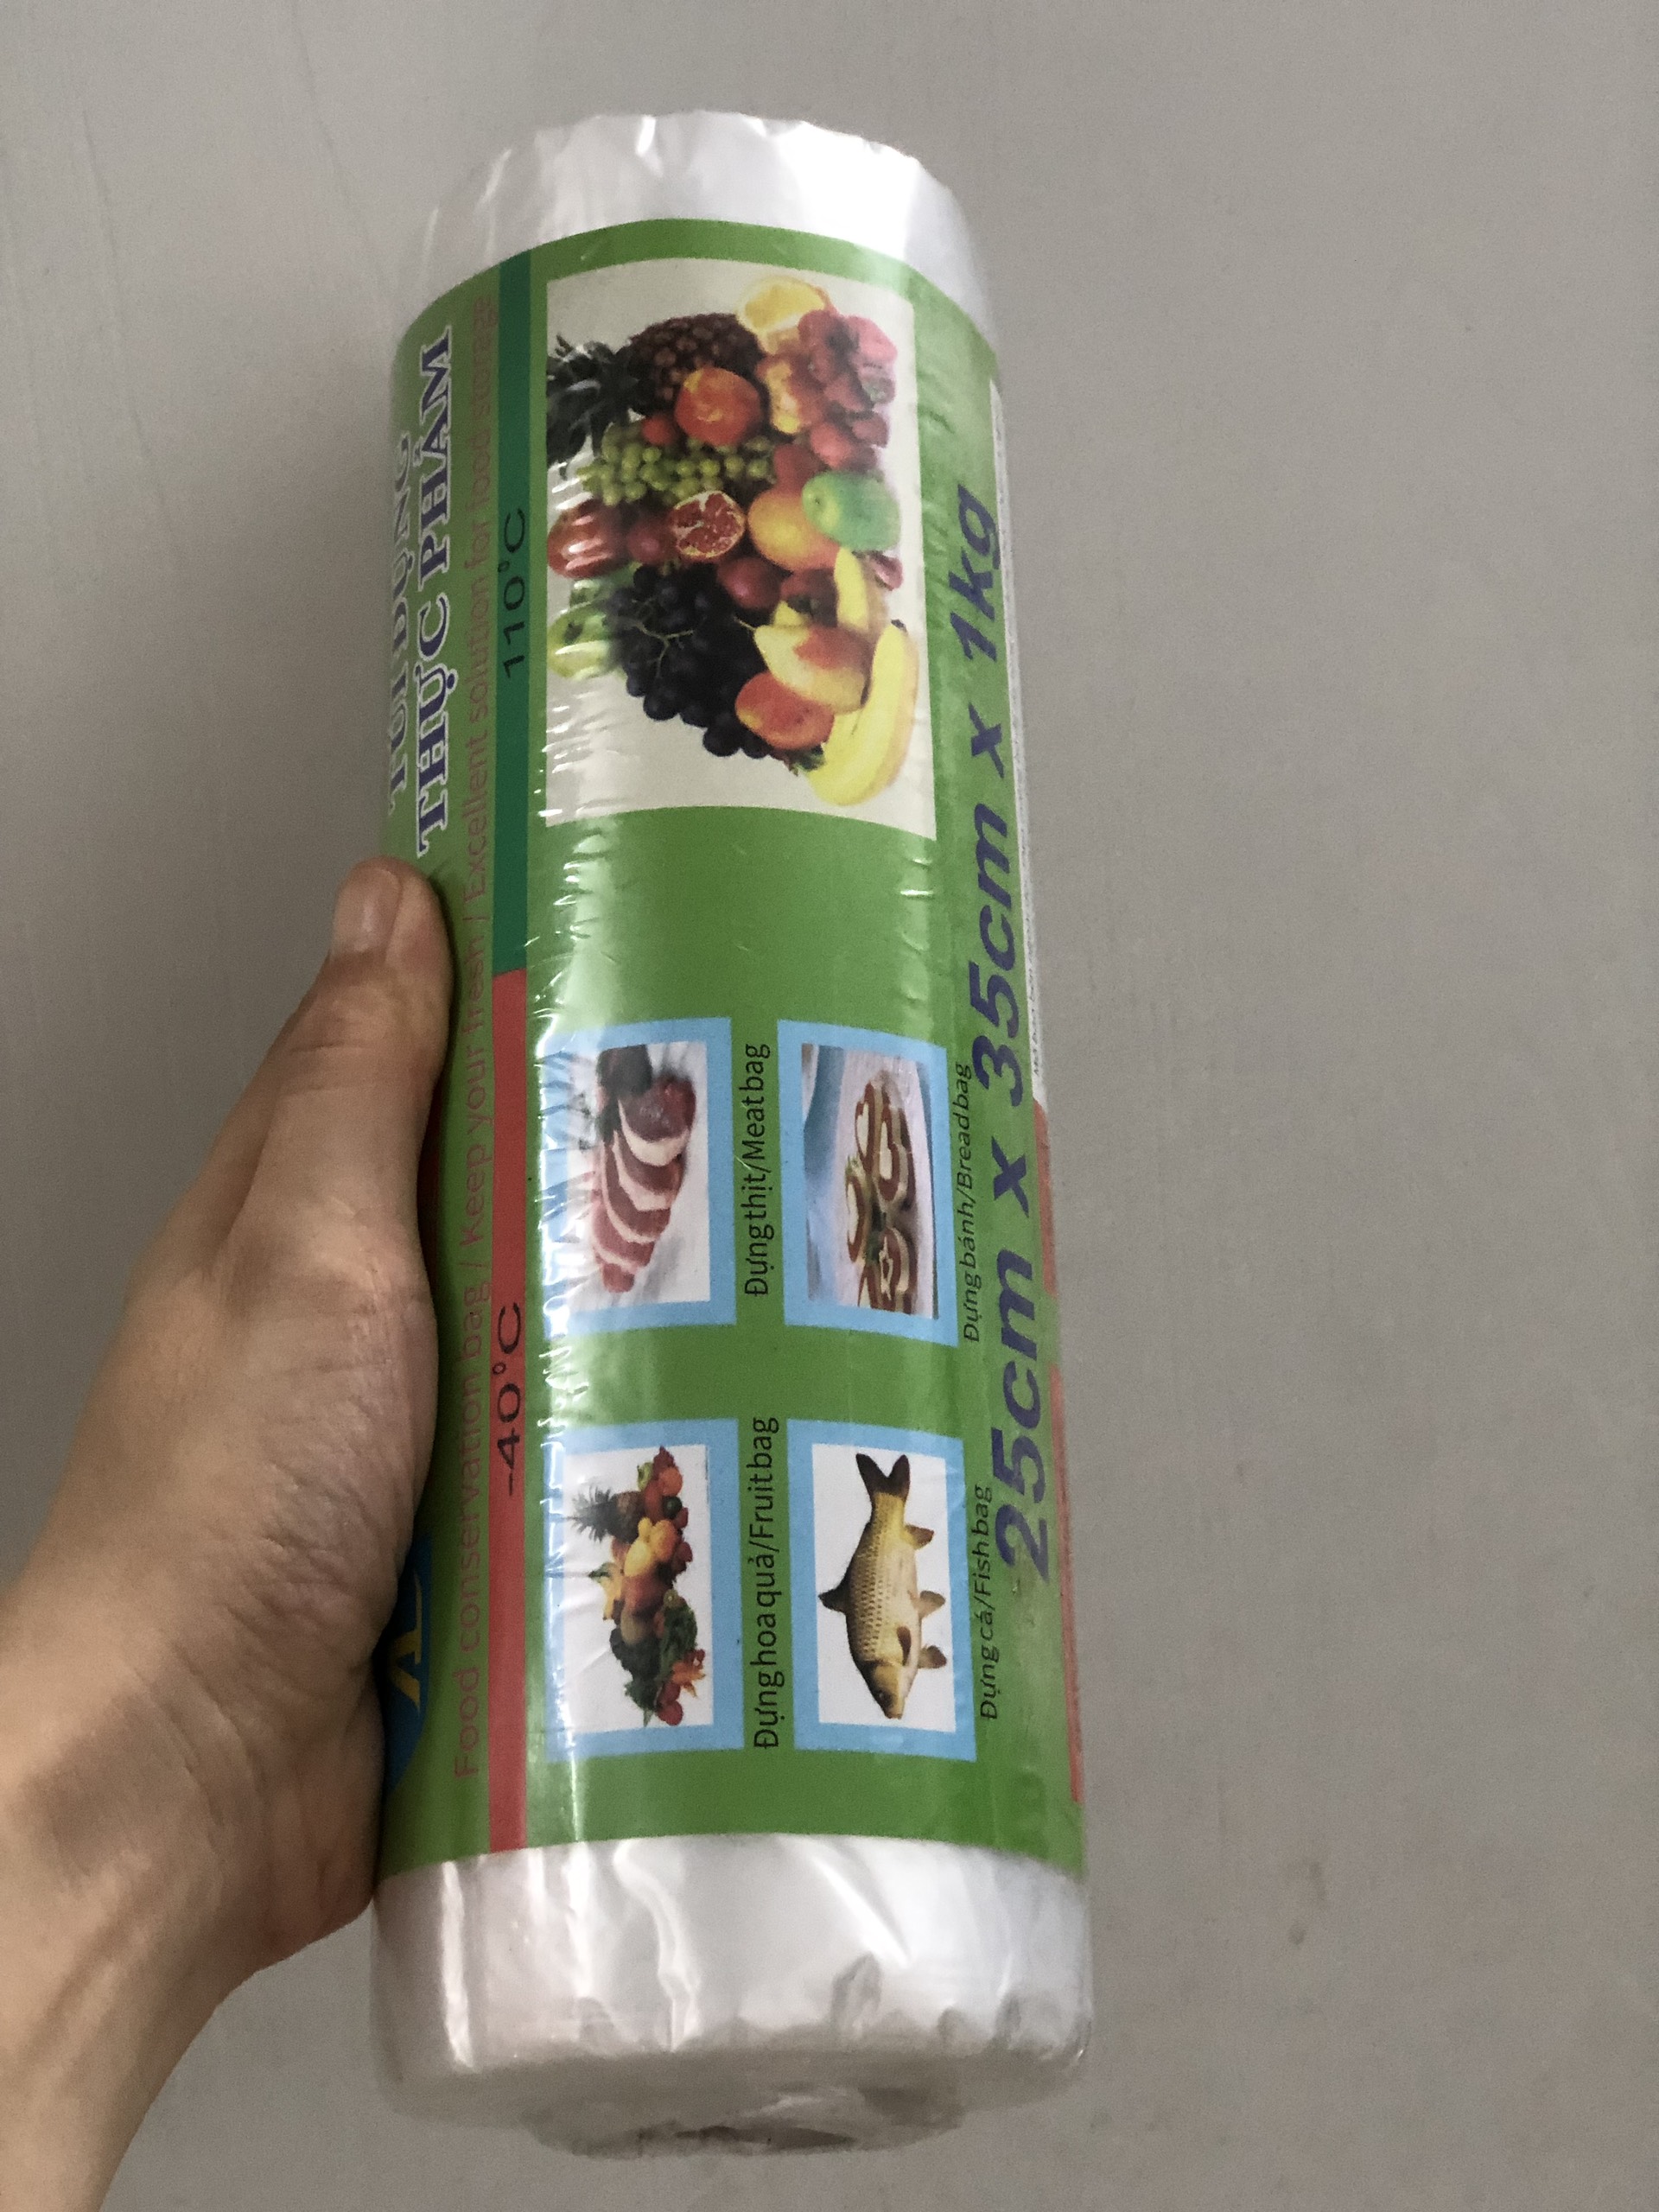 Túi đựng thực phẩm HDPE tự hủy sinh học An Lành dạng cuộn 1kg (25cmx35cm) tặng kẹp túi thực phẩm tiện lợi màu ngẫu nhiên - Hình thật thực tế SP